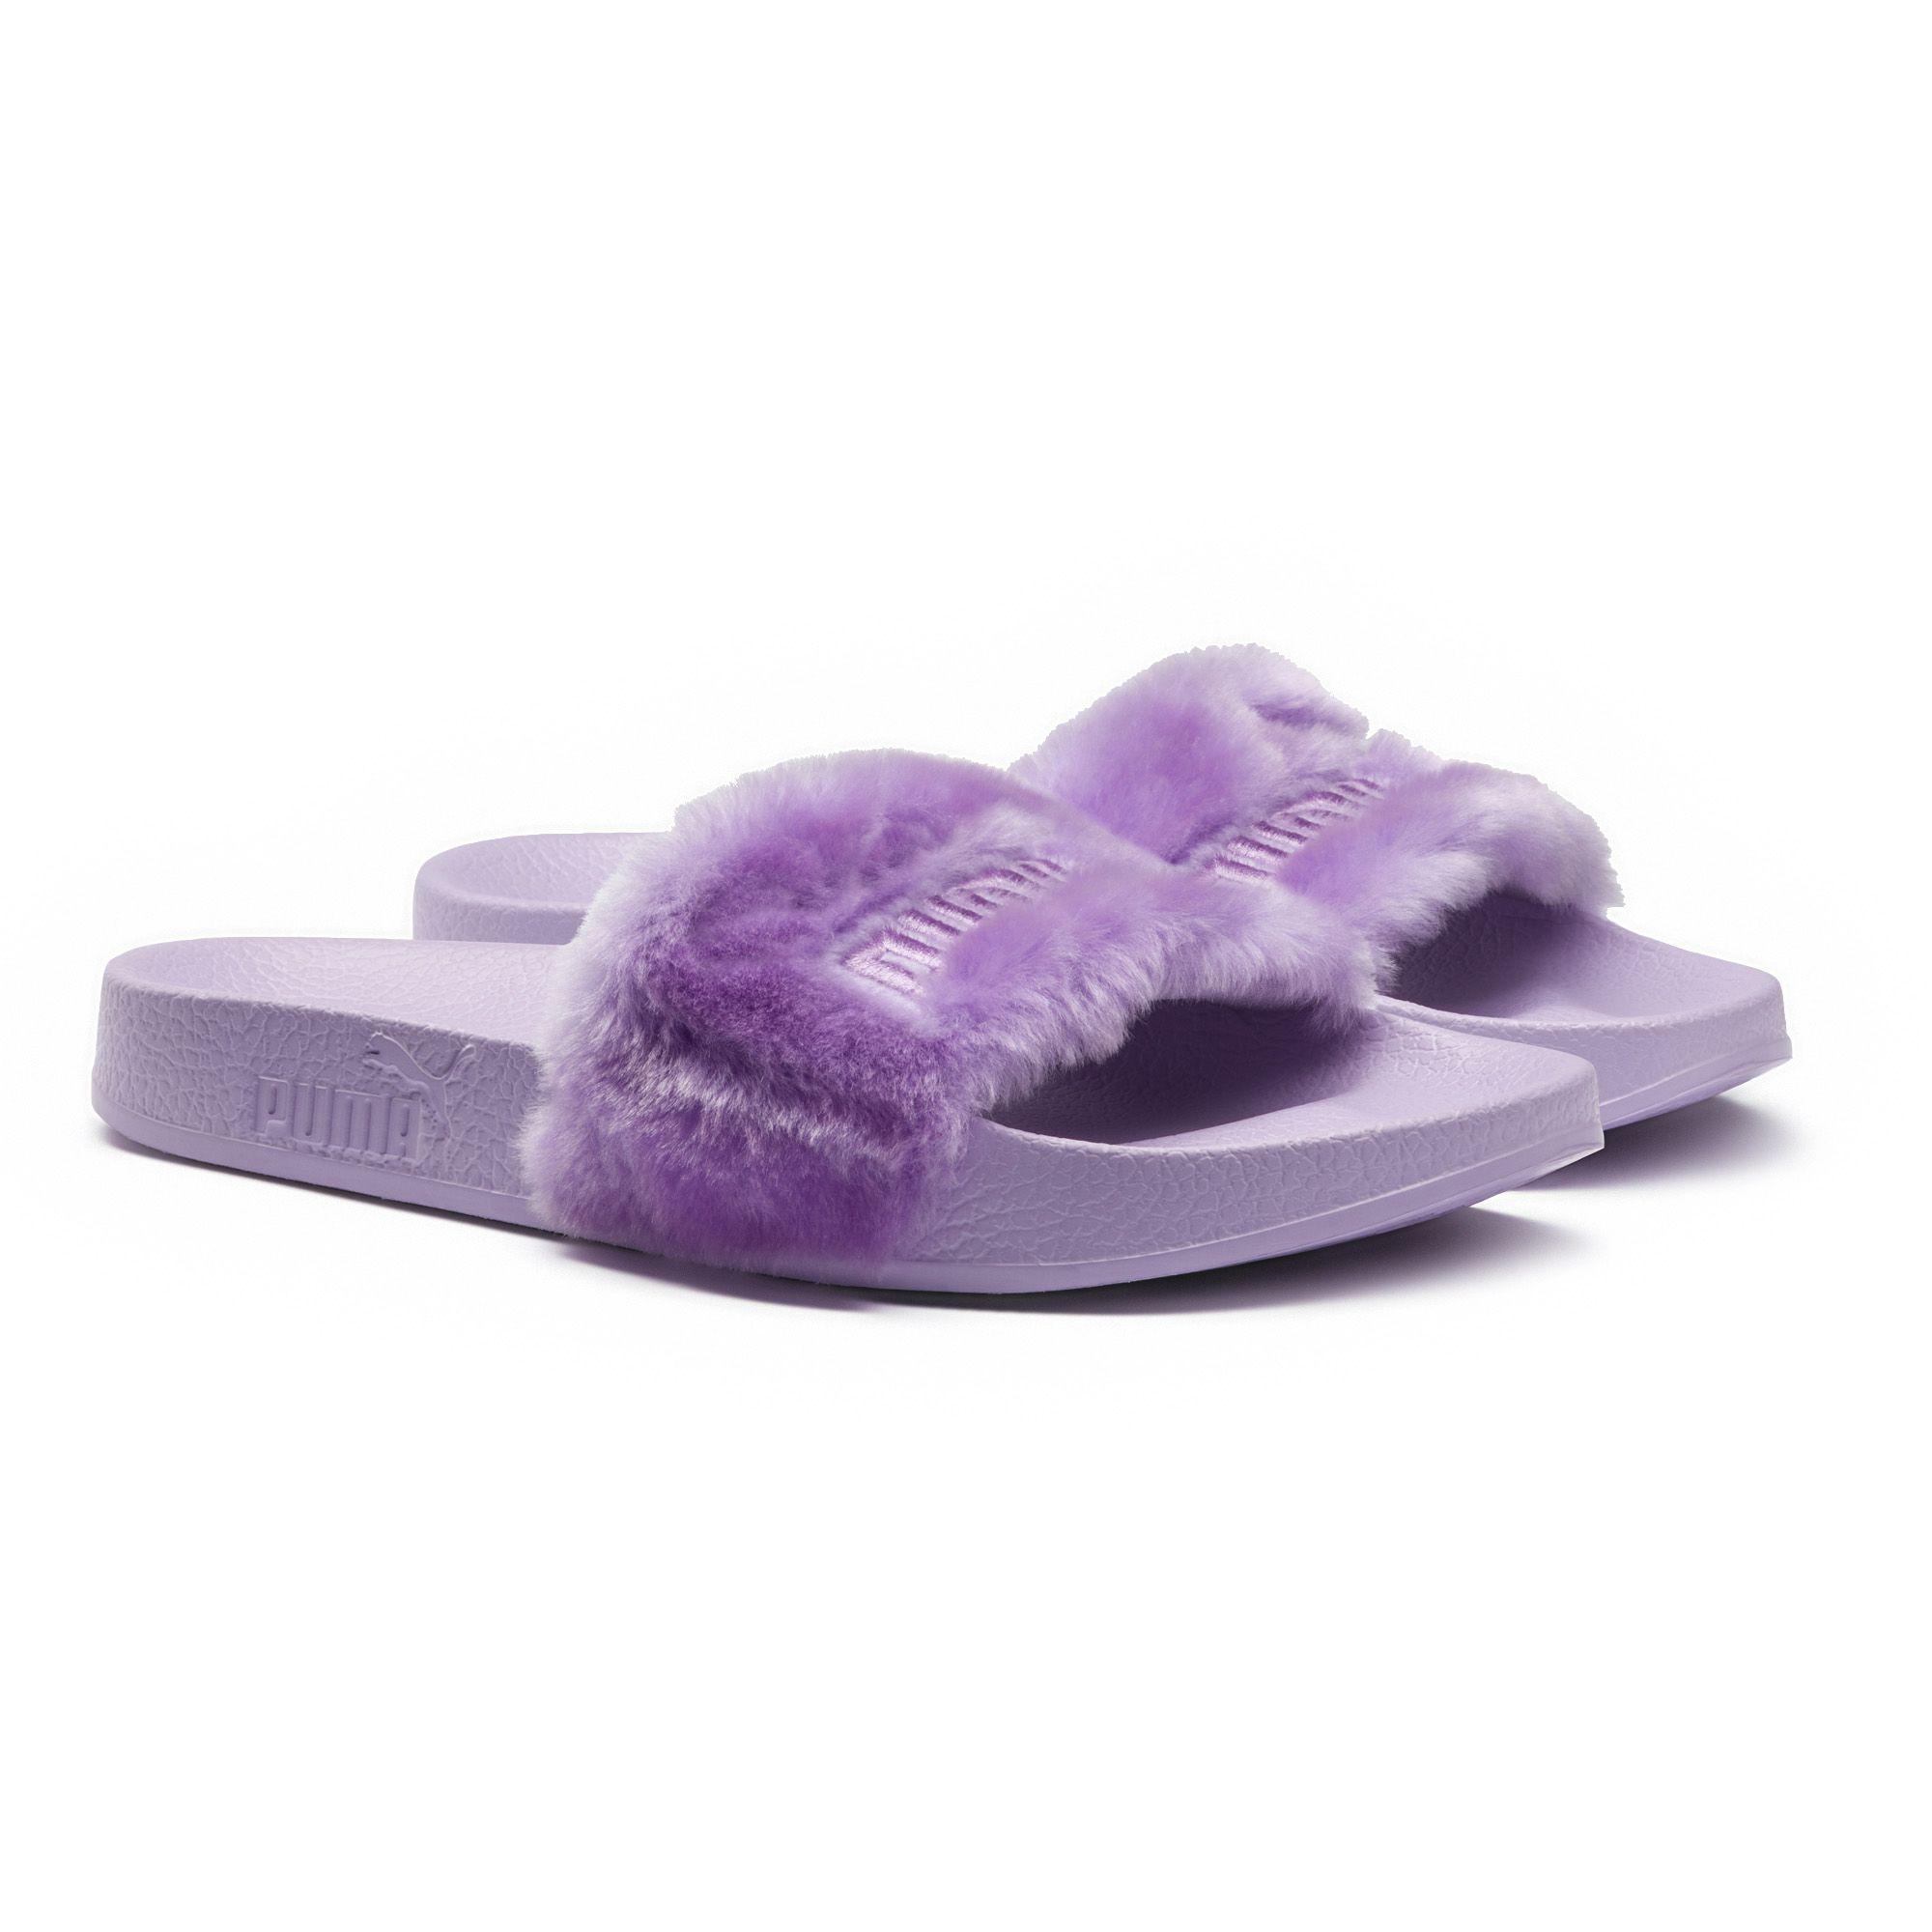 Woestijn minimum Groenteboer PUMA Fenty Fur Men's Slide Sandals in Purple for Men | Lyst